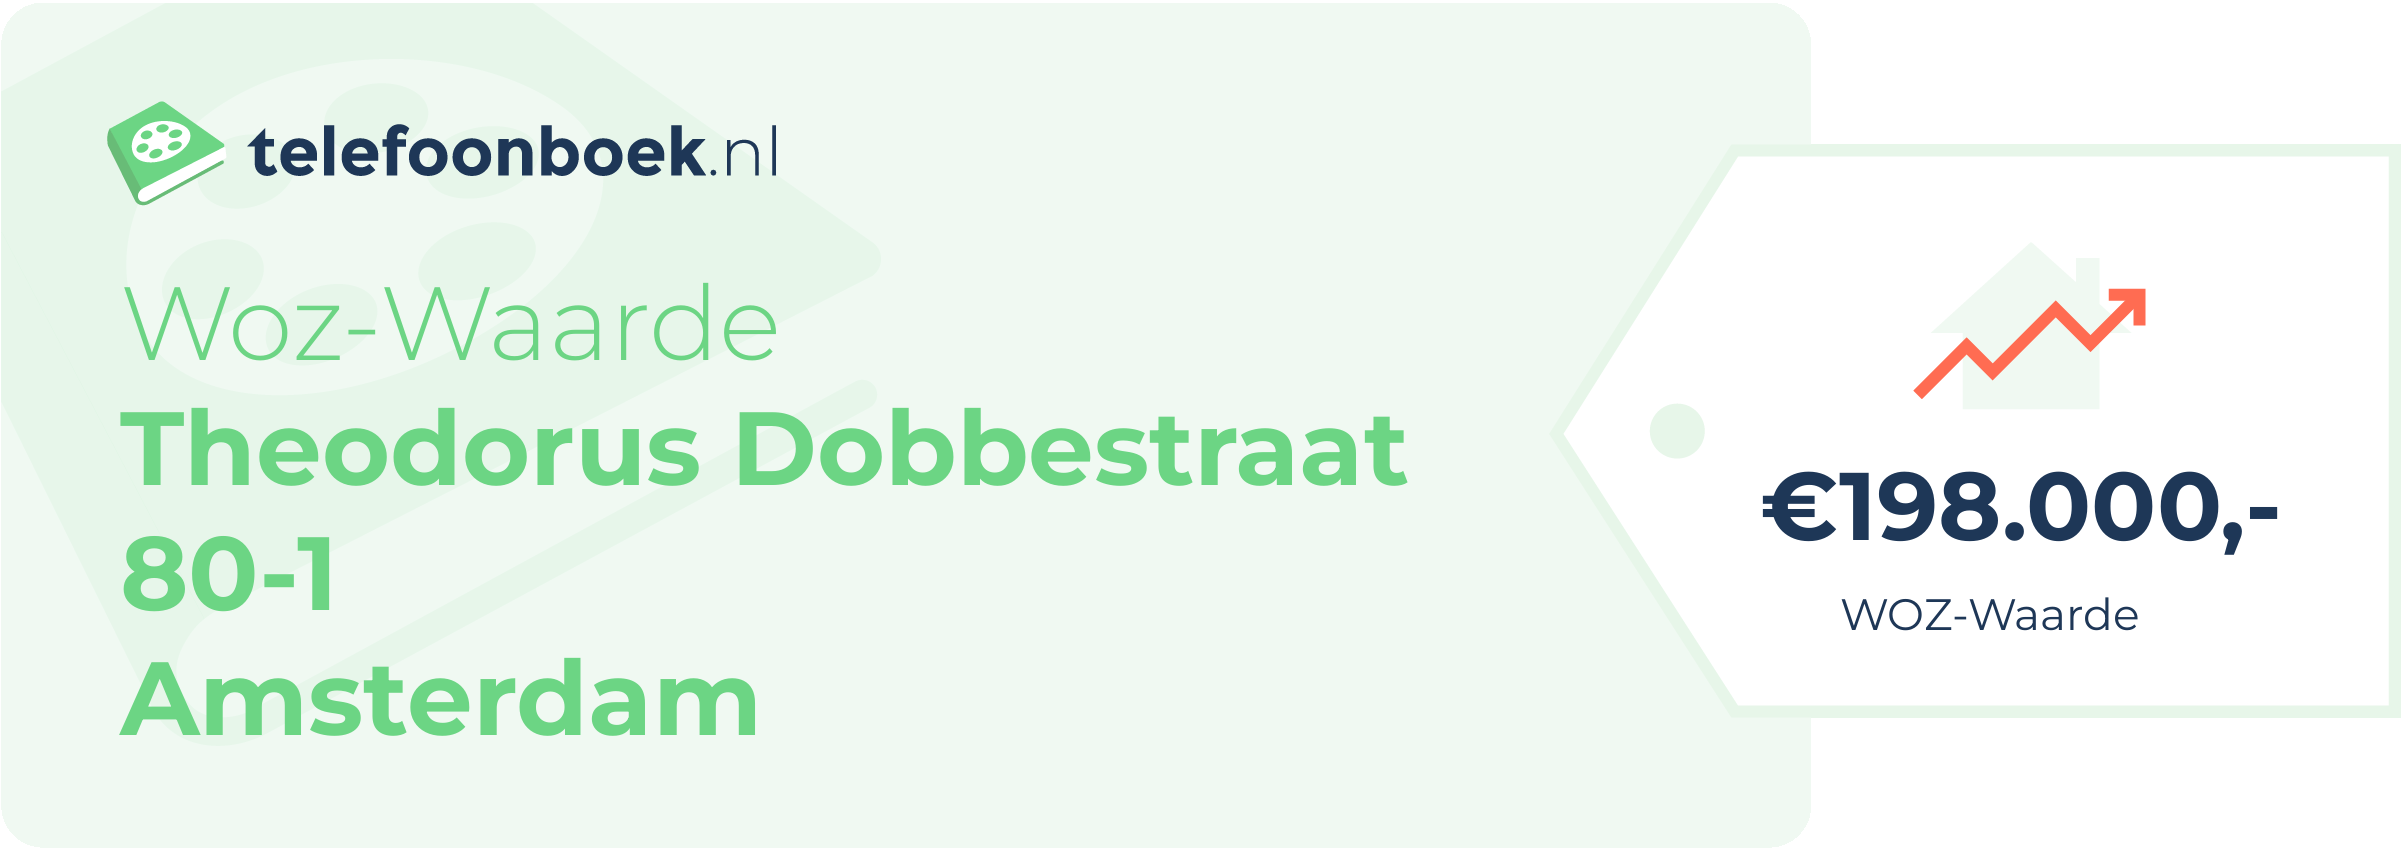 WOZ-waarde Theodorus Dobbestraat 80-1 Amsterdam